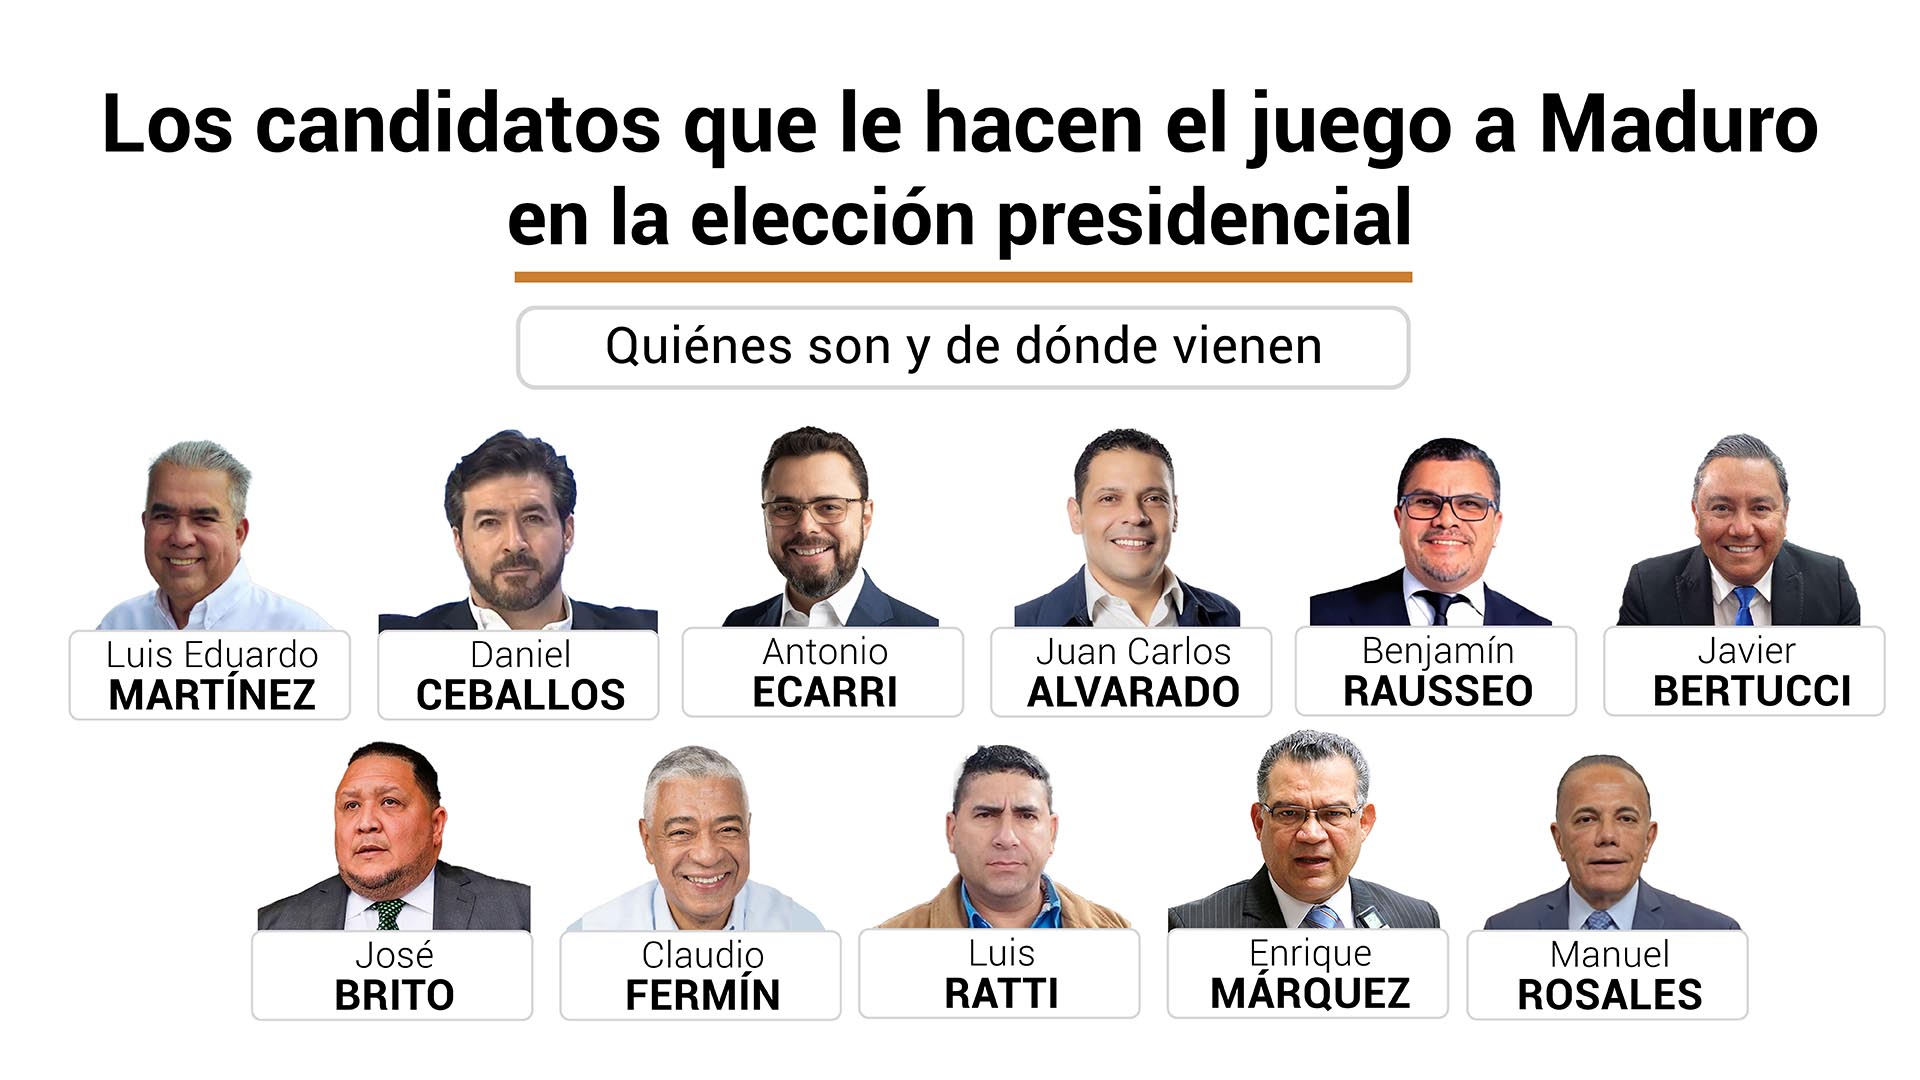 Quiénes son y de dónde vienen los candidatos que le hacen el juego a Maduro en su farsa electoral